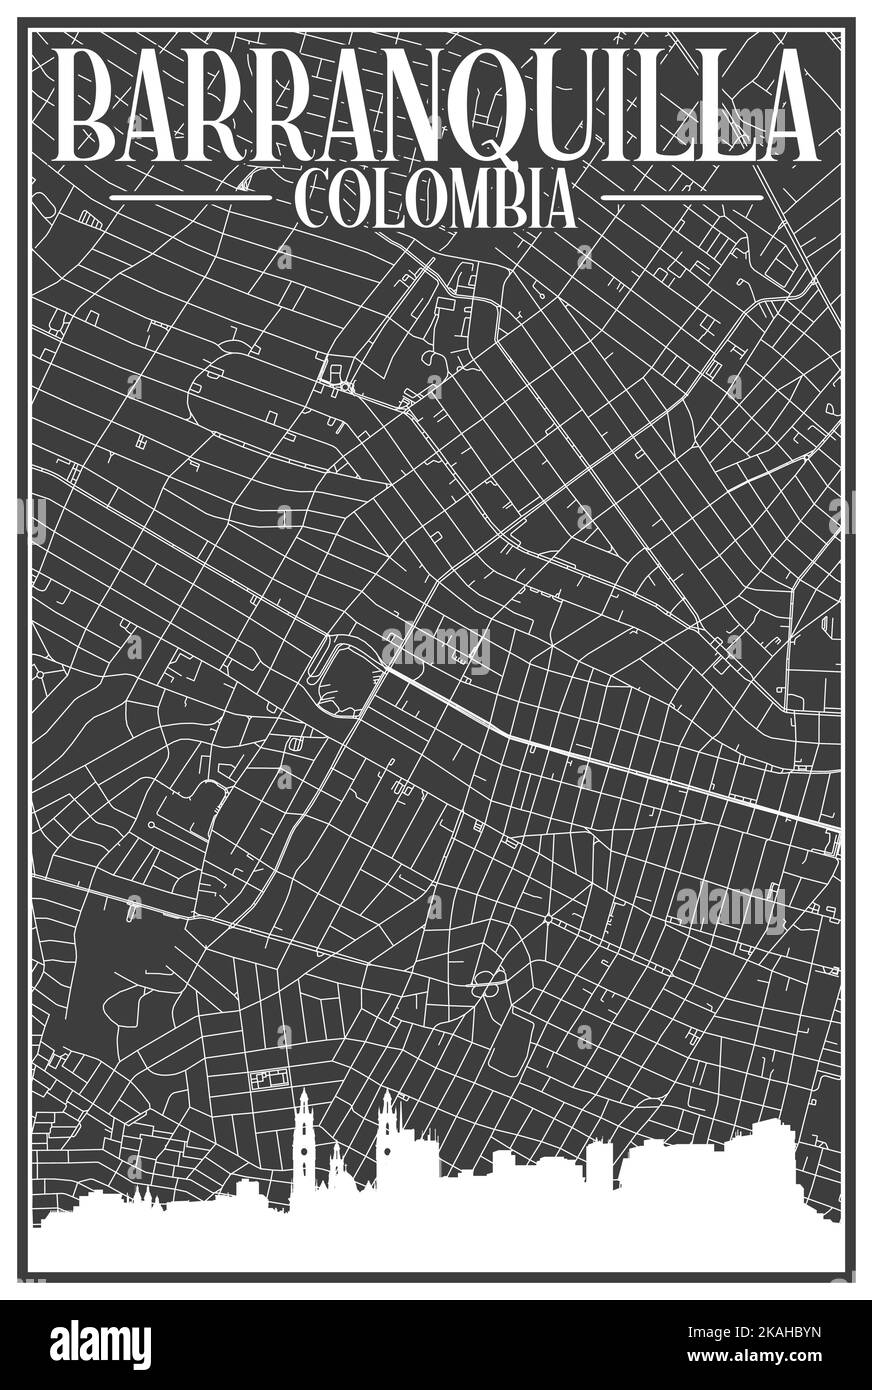 Carte du réseau des rues du centre-ville DE BARRANQUILLA, COLOMBIE, imprimée à la main, d'époque noire, avec des gratte-ciel et des lettres en relief Illustration de Vecteur